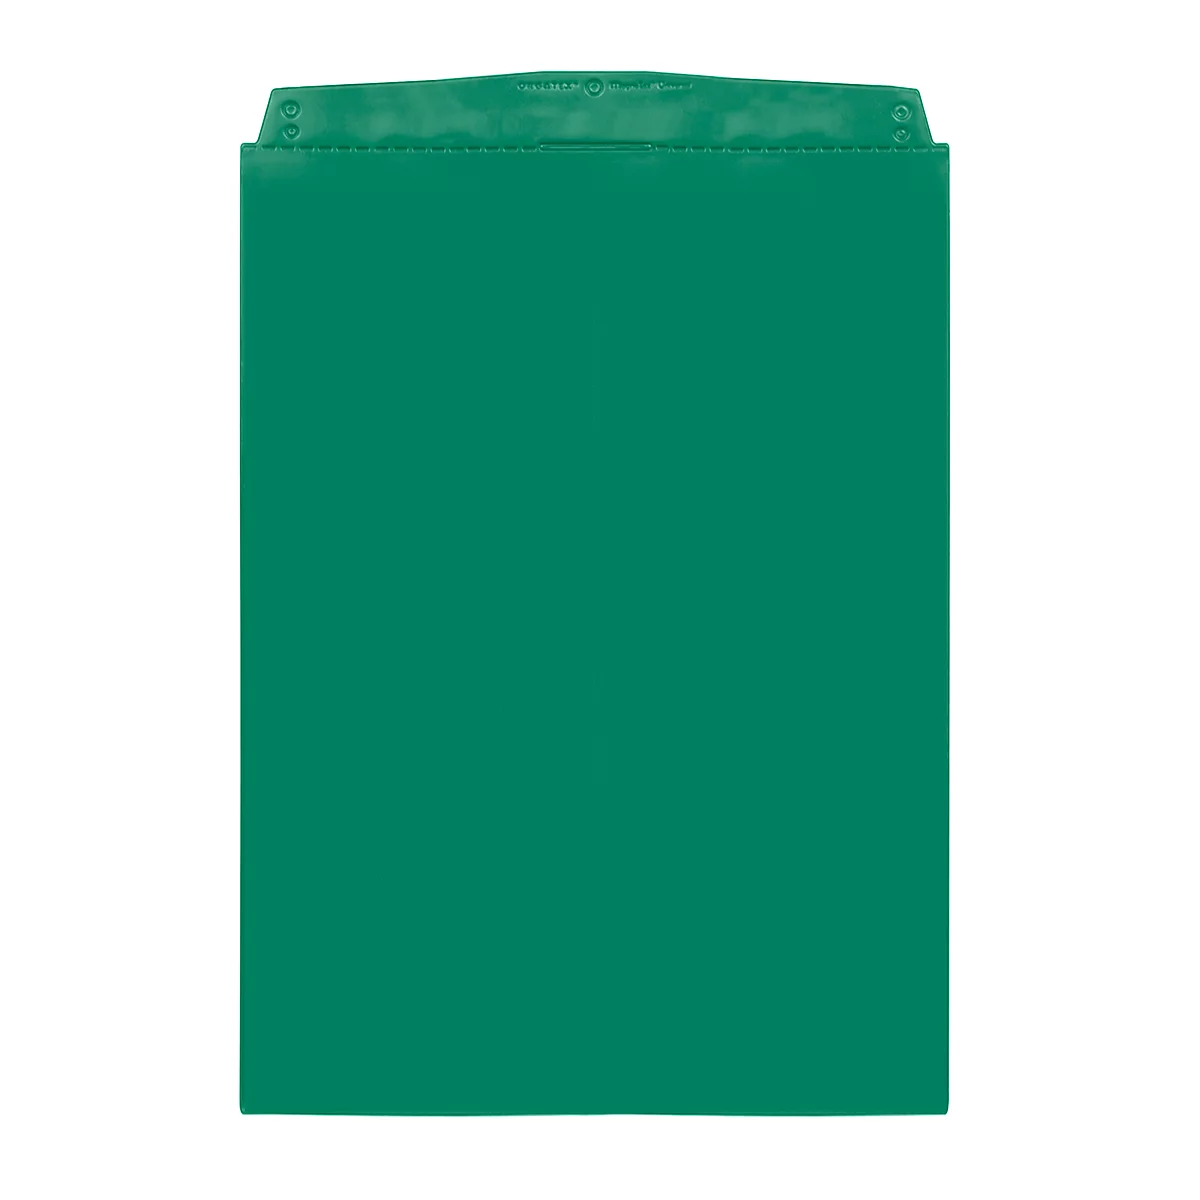 Fundas transparentes Orgatex, A4 vertical, verde, 50 uds.